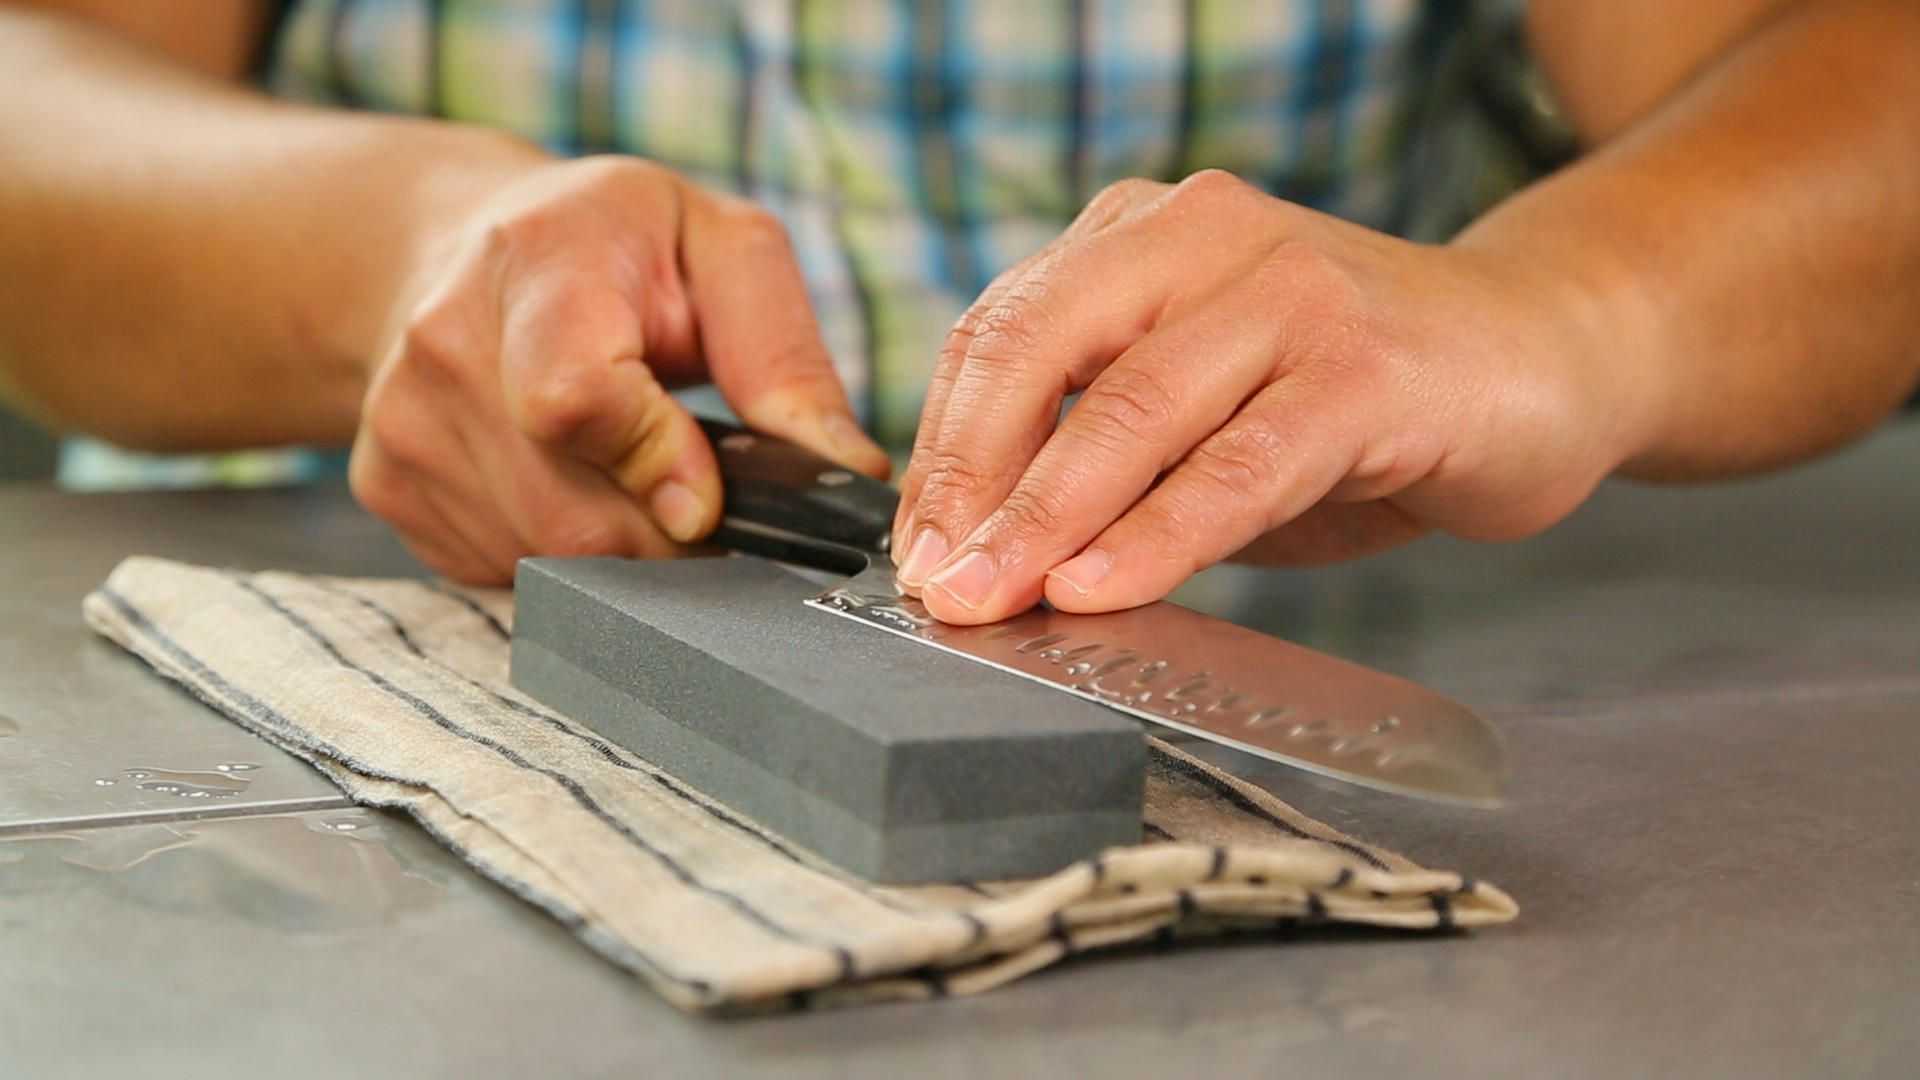 Заточка домашних ножей